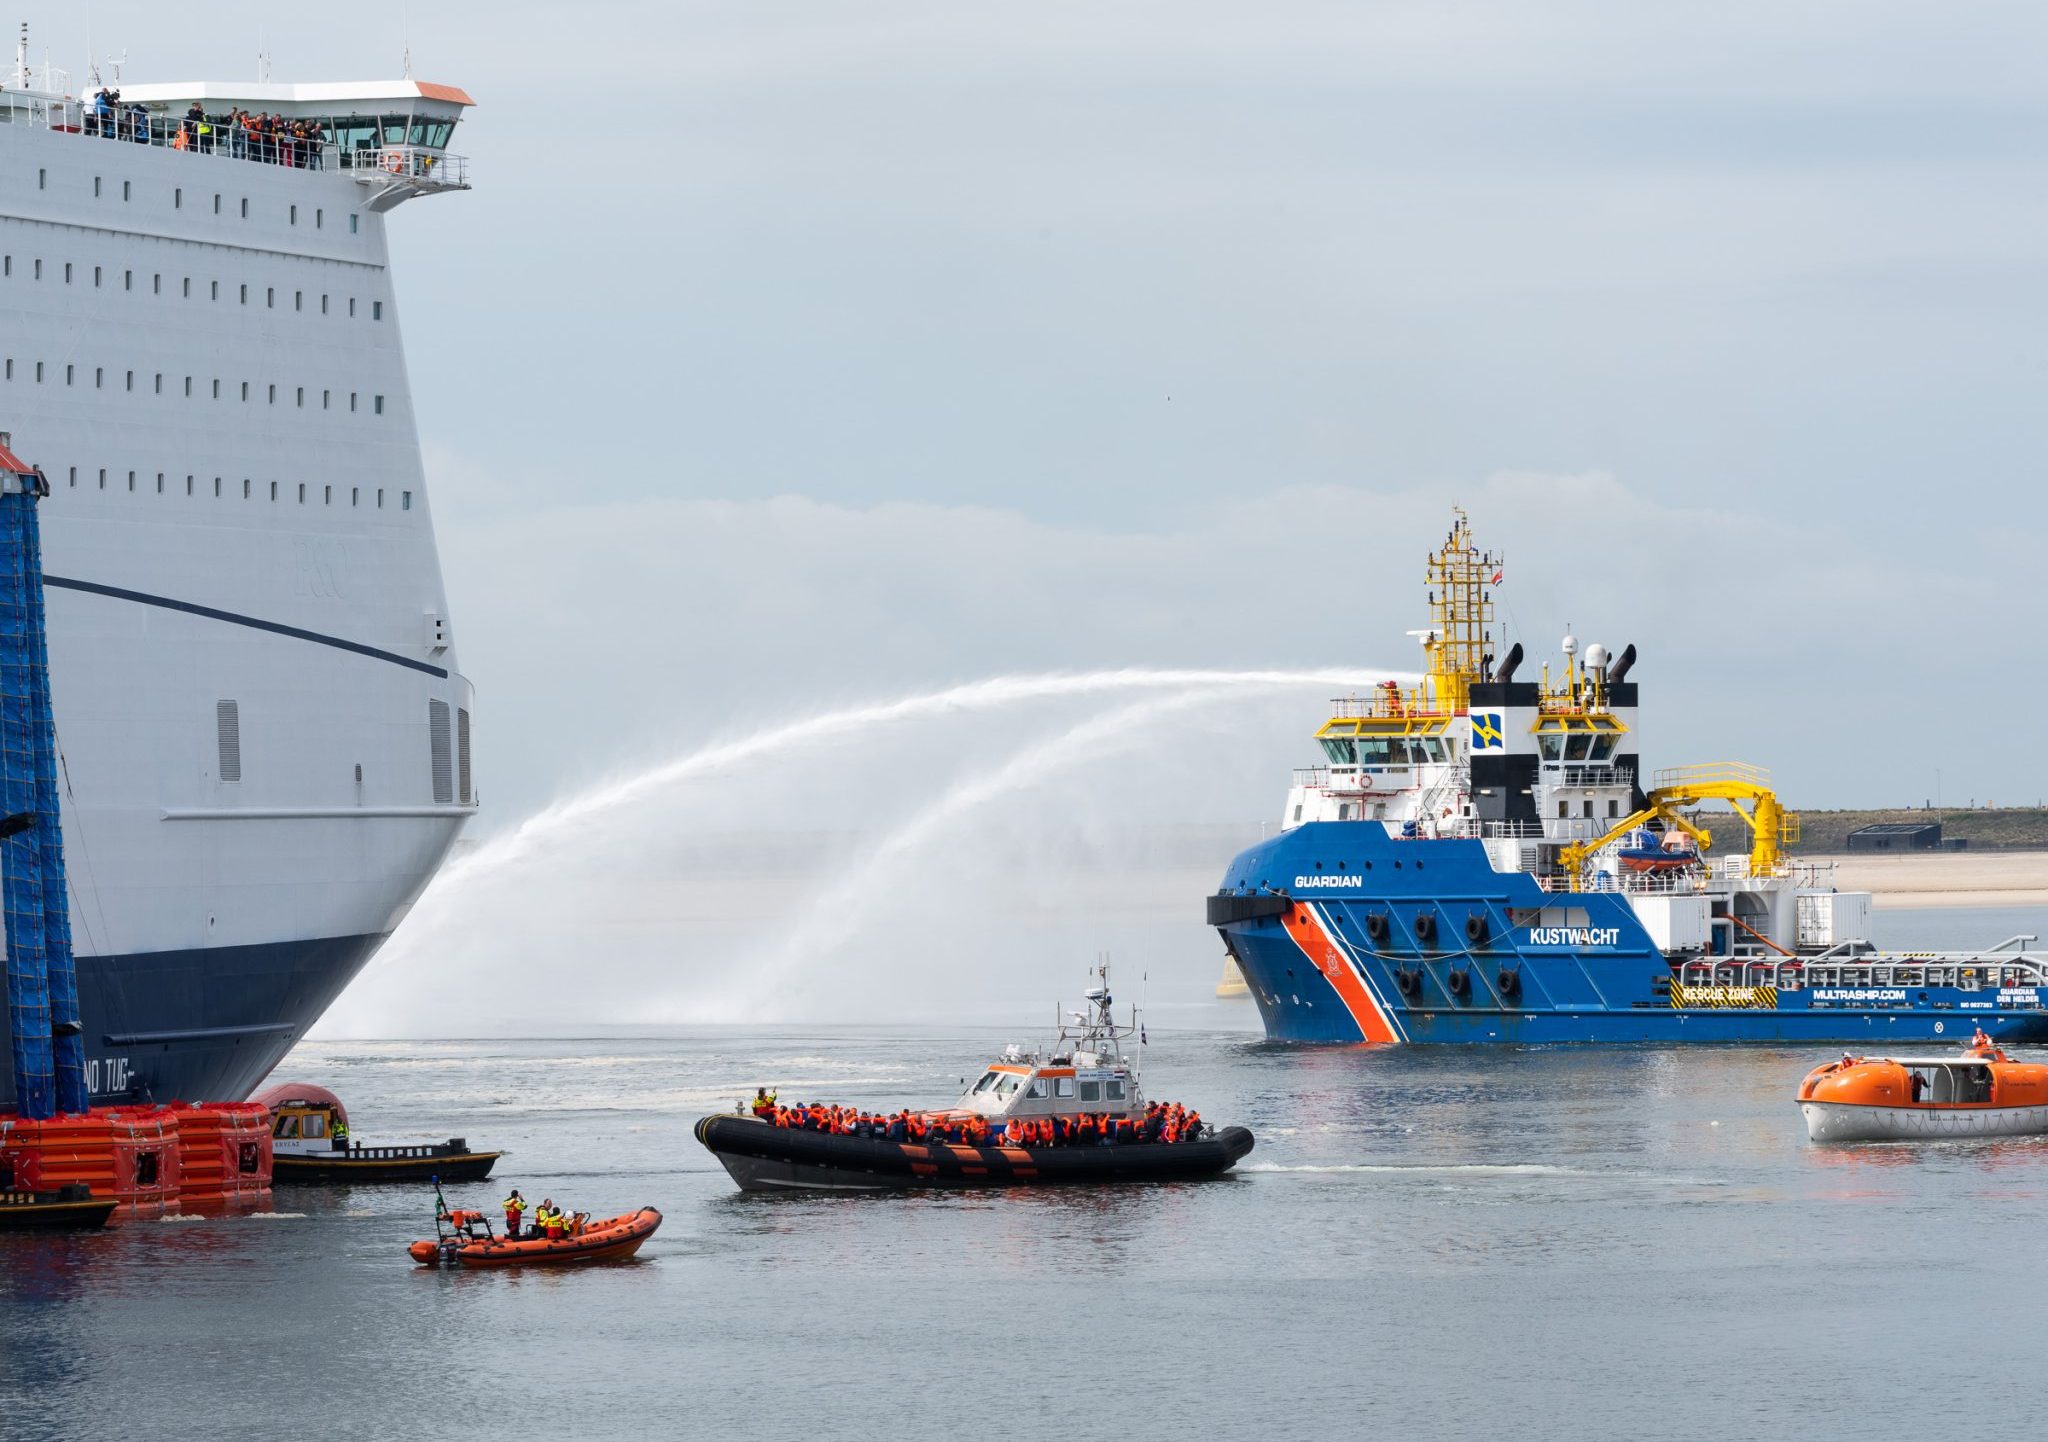 Tijdens de grootschalige massa-evacuatieoefening werd de ferry Pride of Hull geëvacueerd.